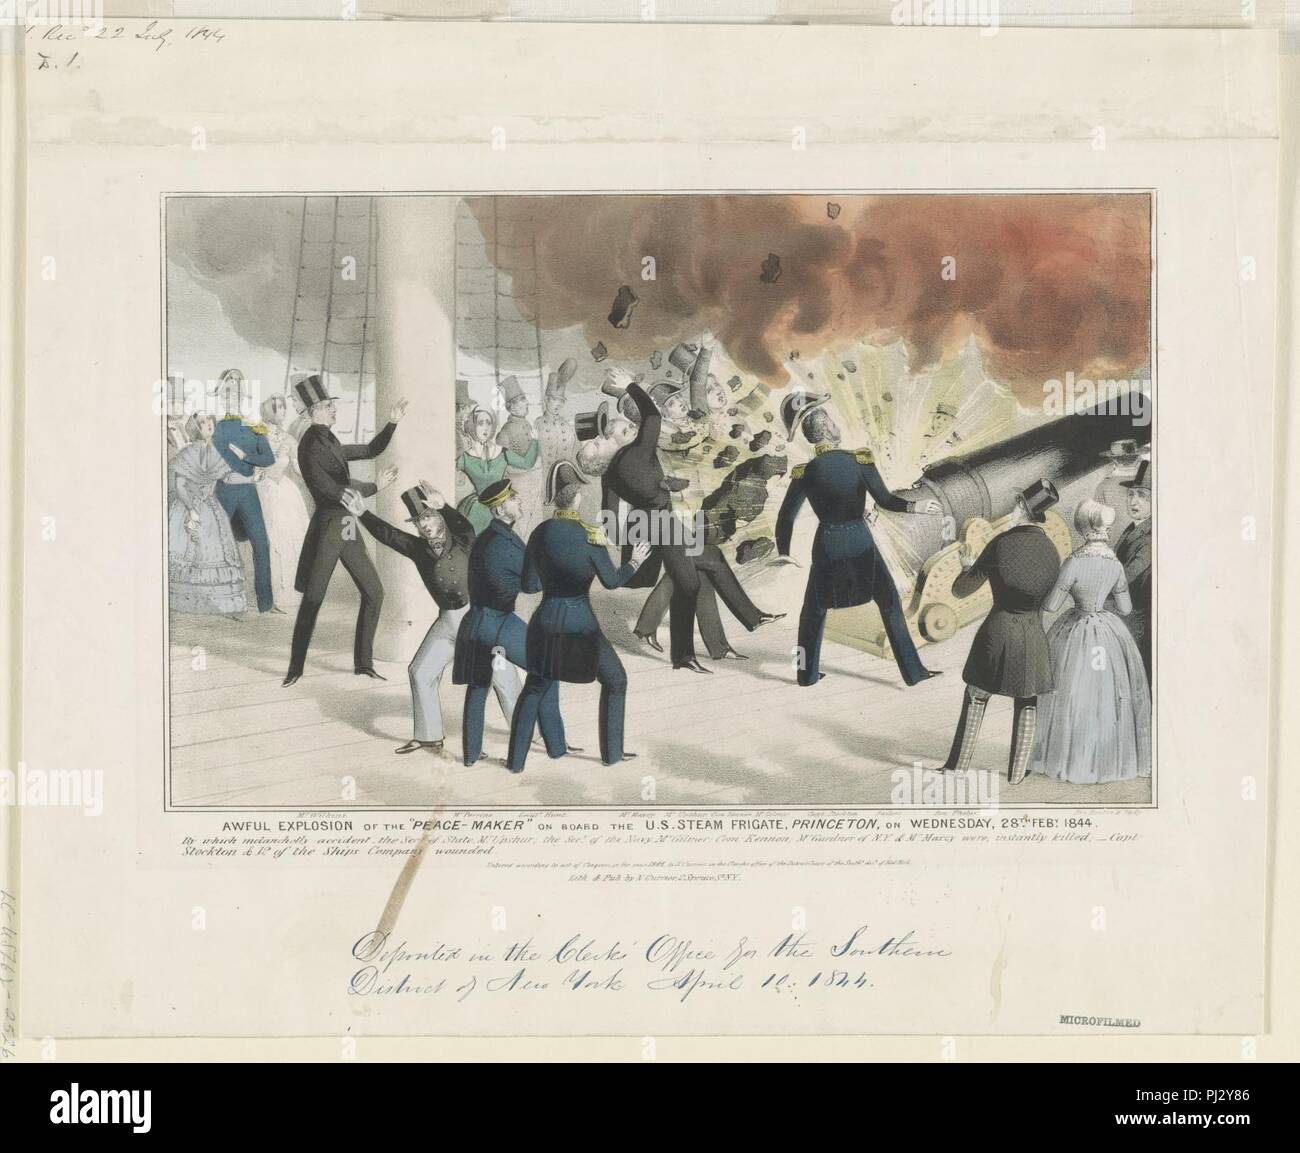 Terrible explosion de l'artisan de la paix' à bord de la frégate à vapeur aux États-Unis, Princeton, le mercredi, 28e Feby. 1844 Banque D'Images